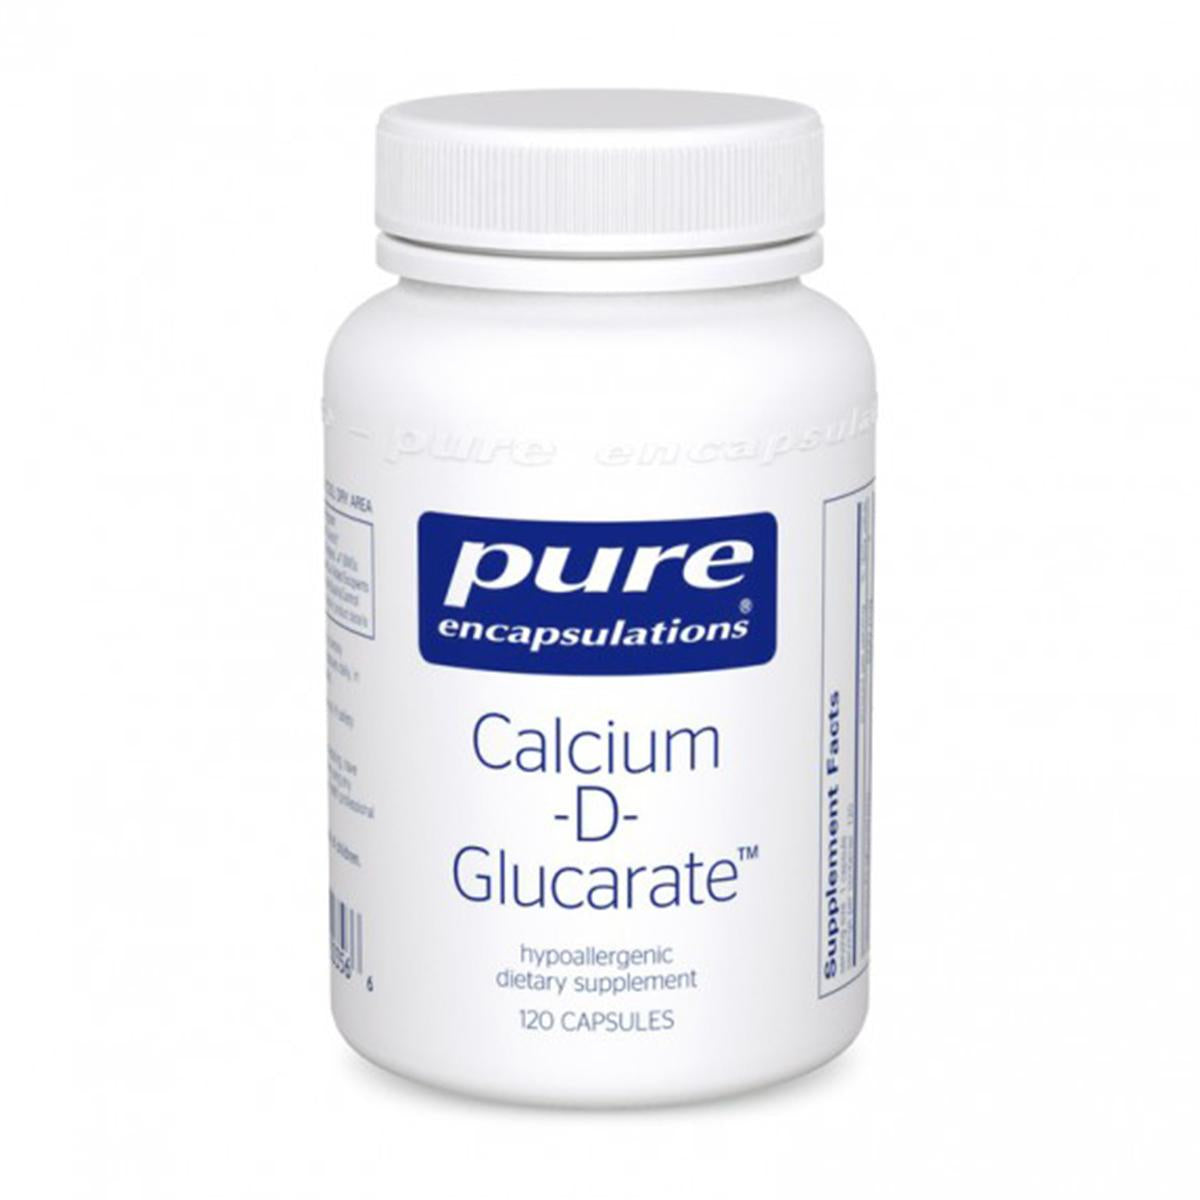 Primary image of Calcium-D-Glucarate